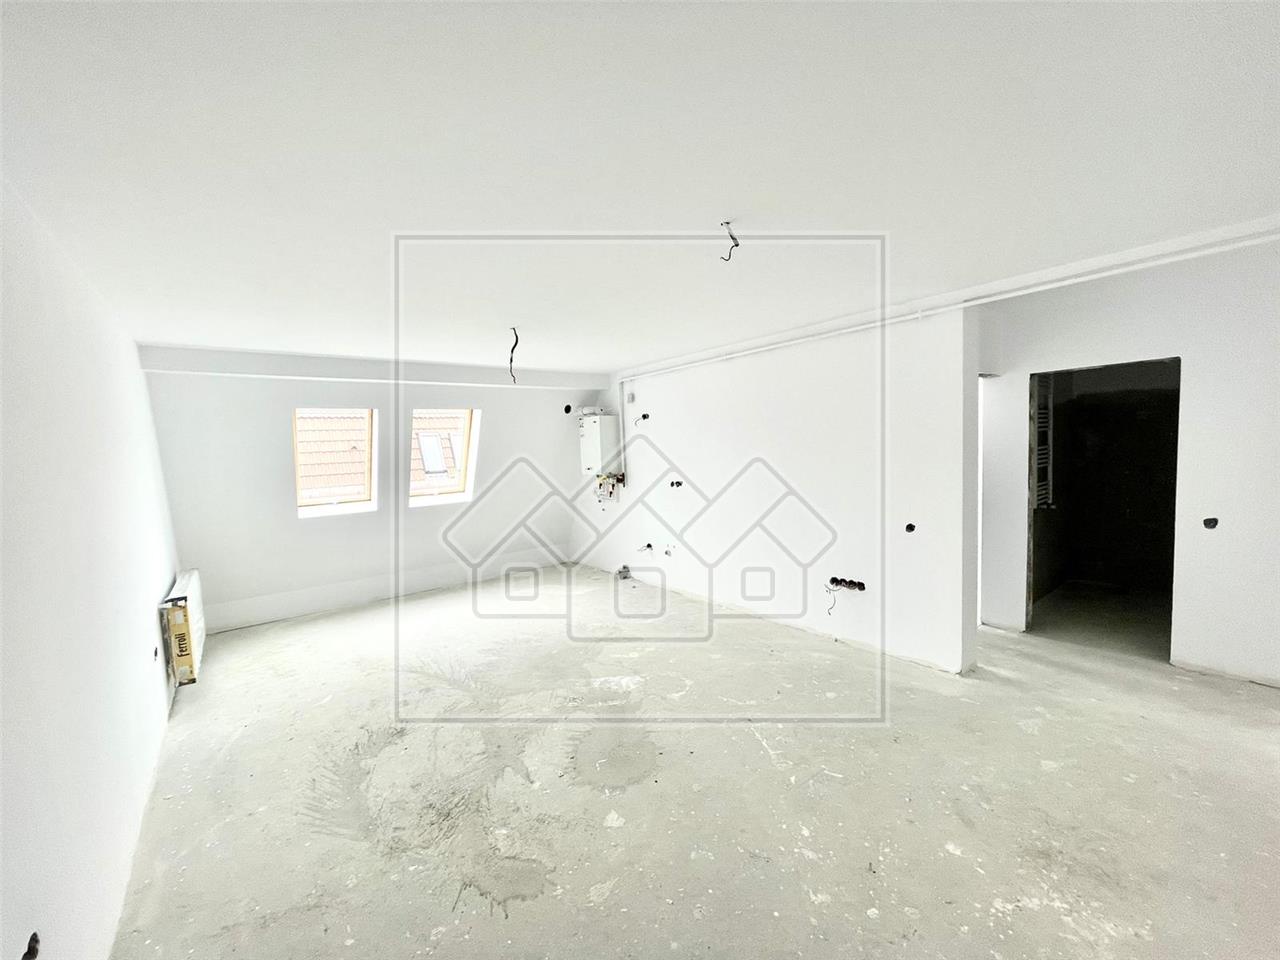 Wohnung zum Verkauf in Sibiu - Neubau - 2 Zimmer